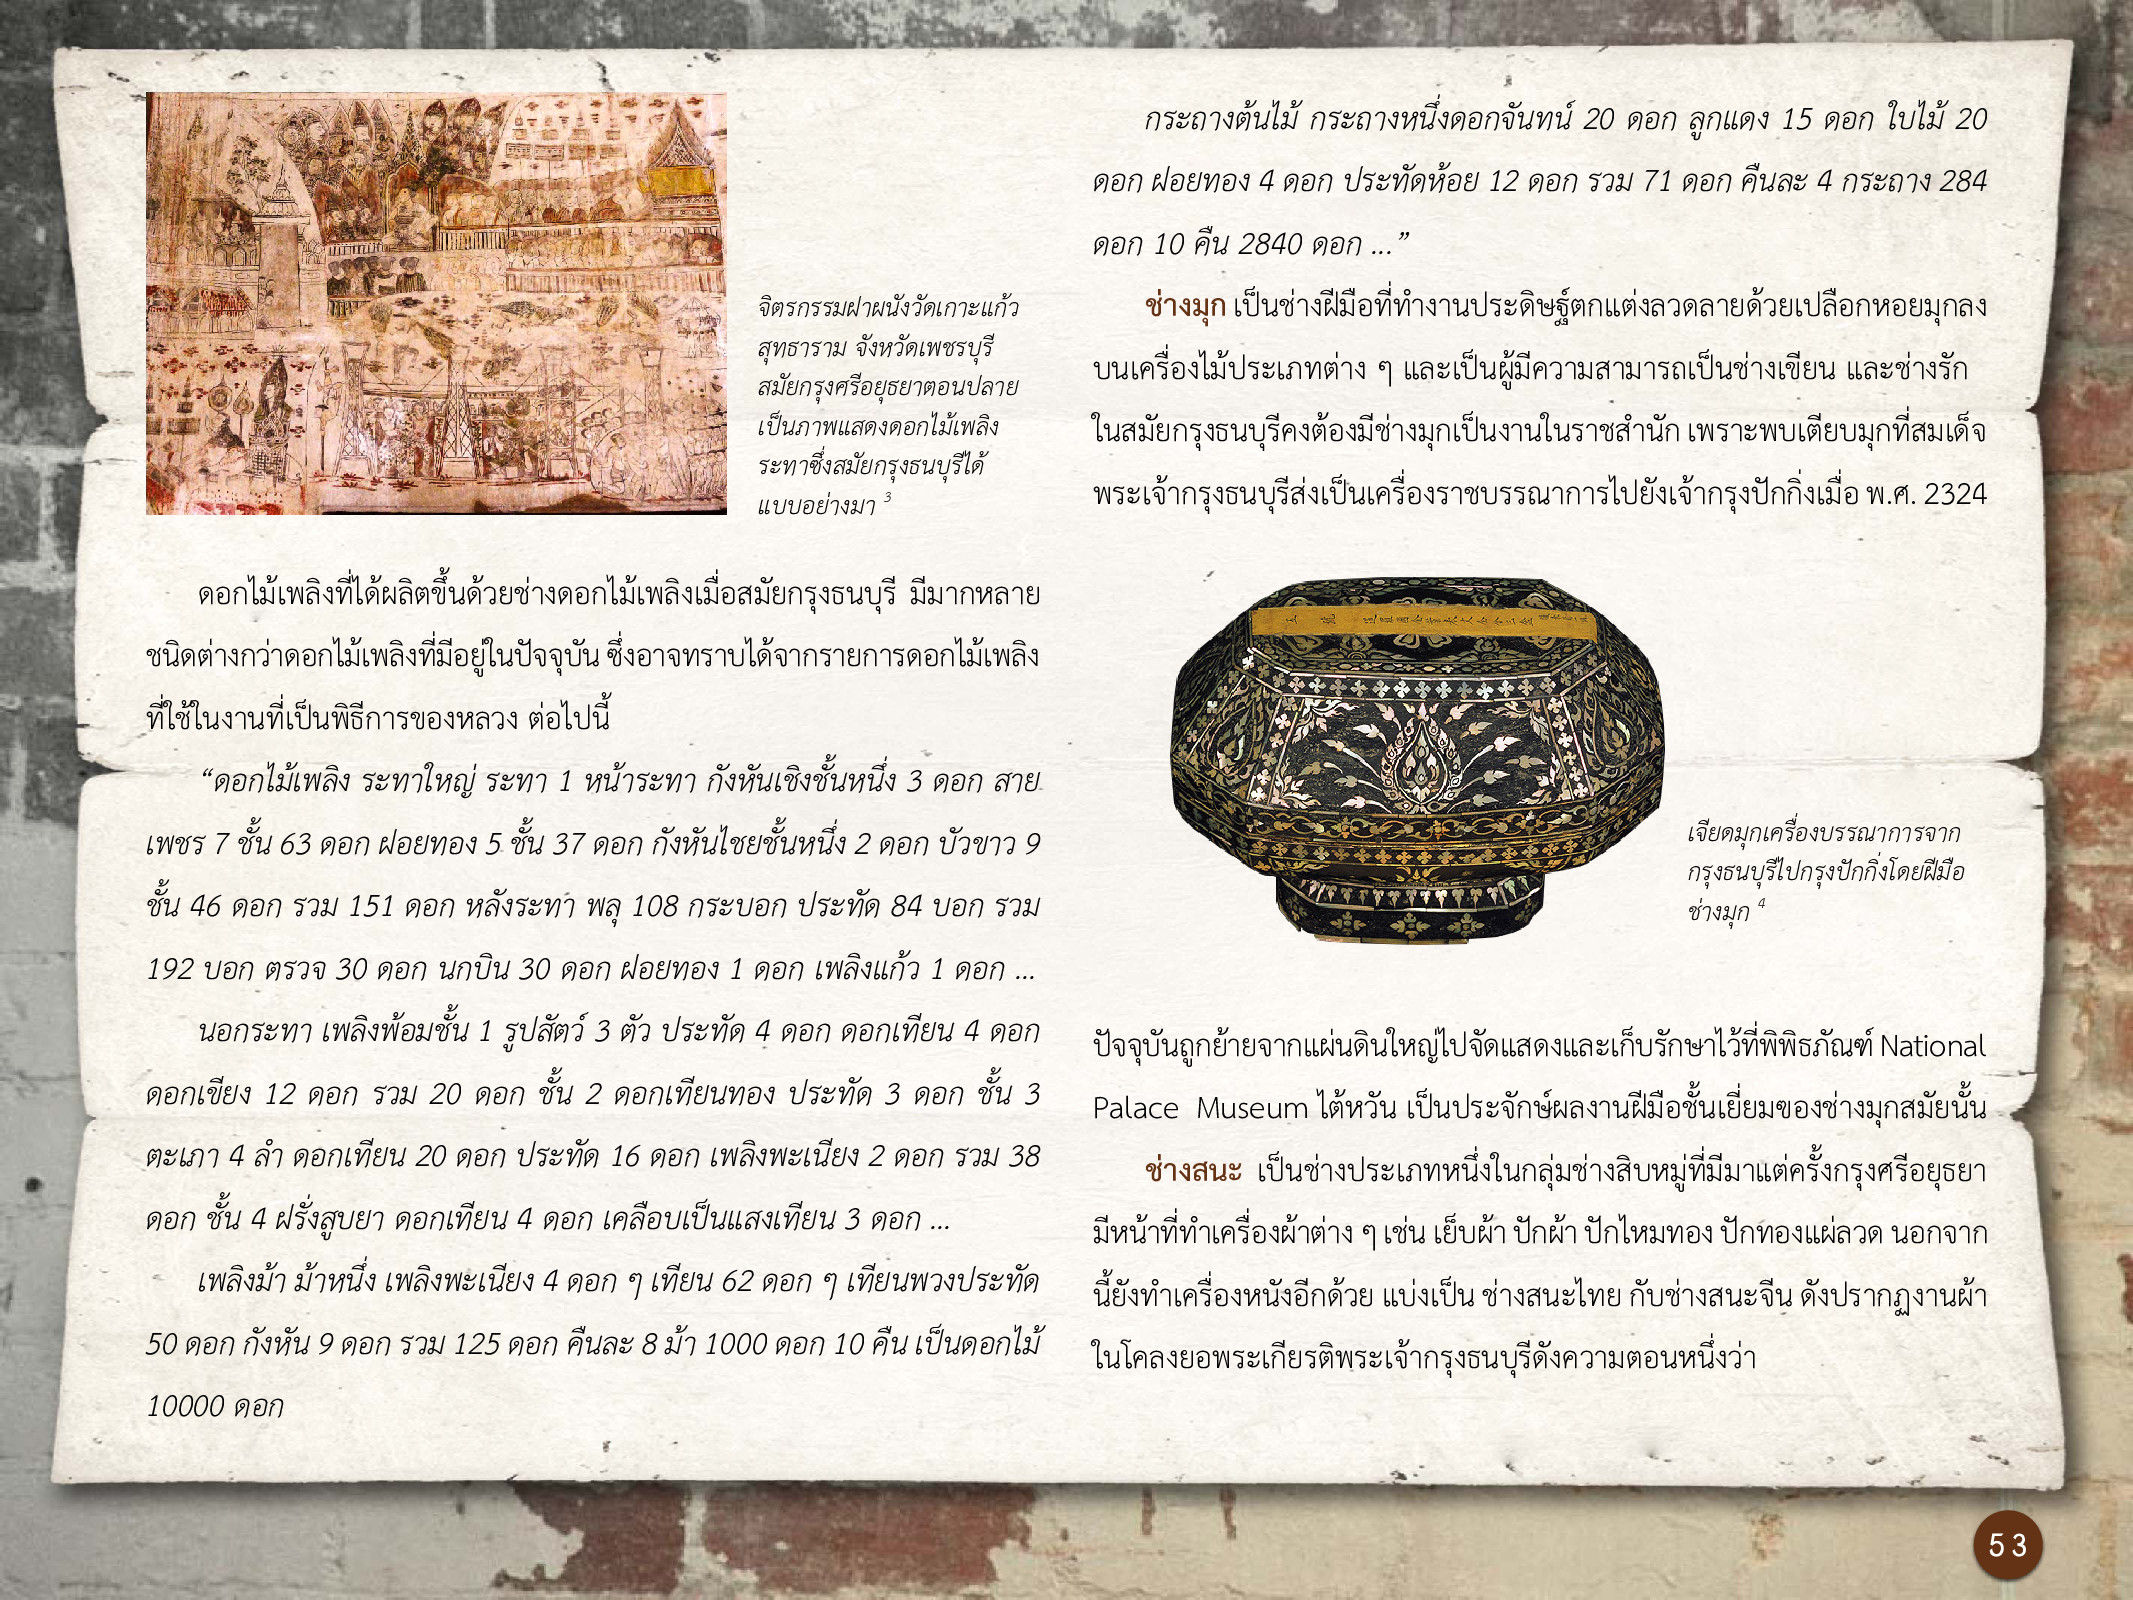 ศิลปกรรมกรุงธนบุรี ./images/encyclopedia/53.jpg